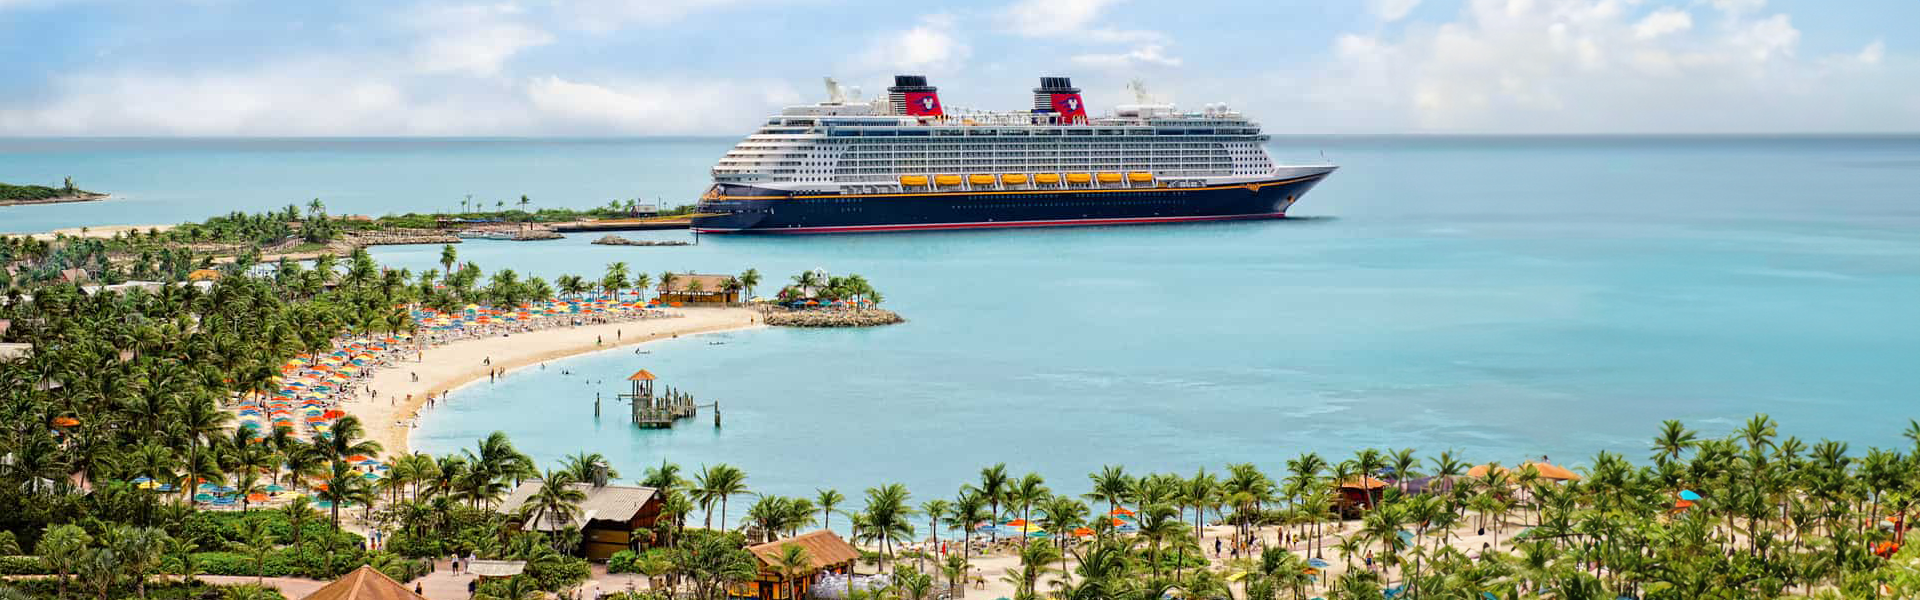 Карибские острова со сказкой Disney Cruise Line